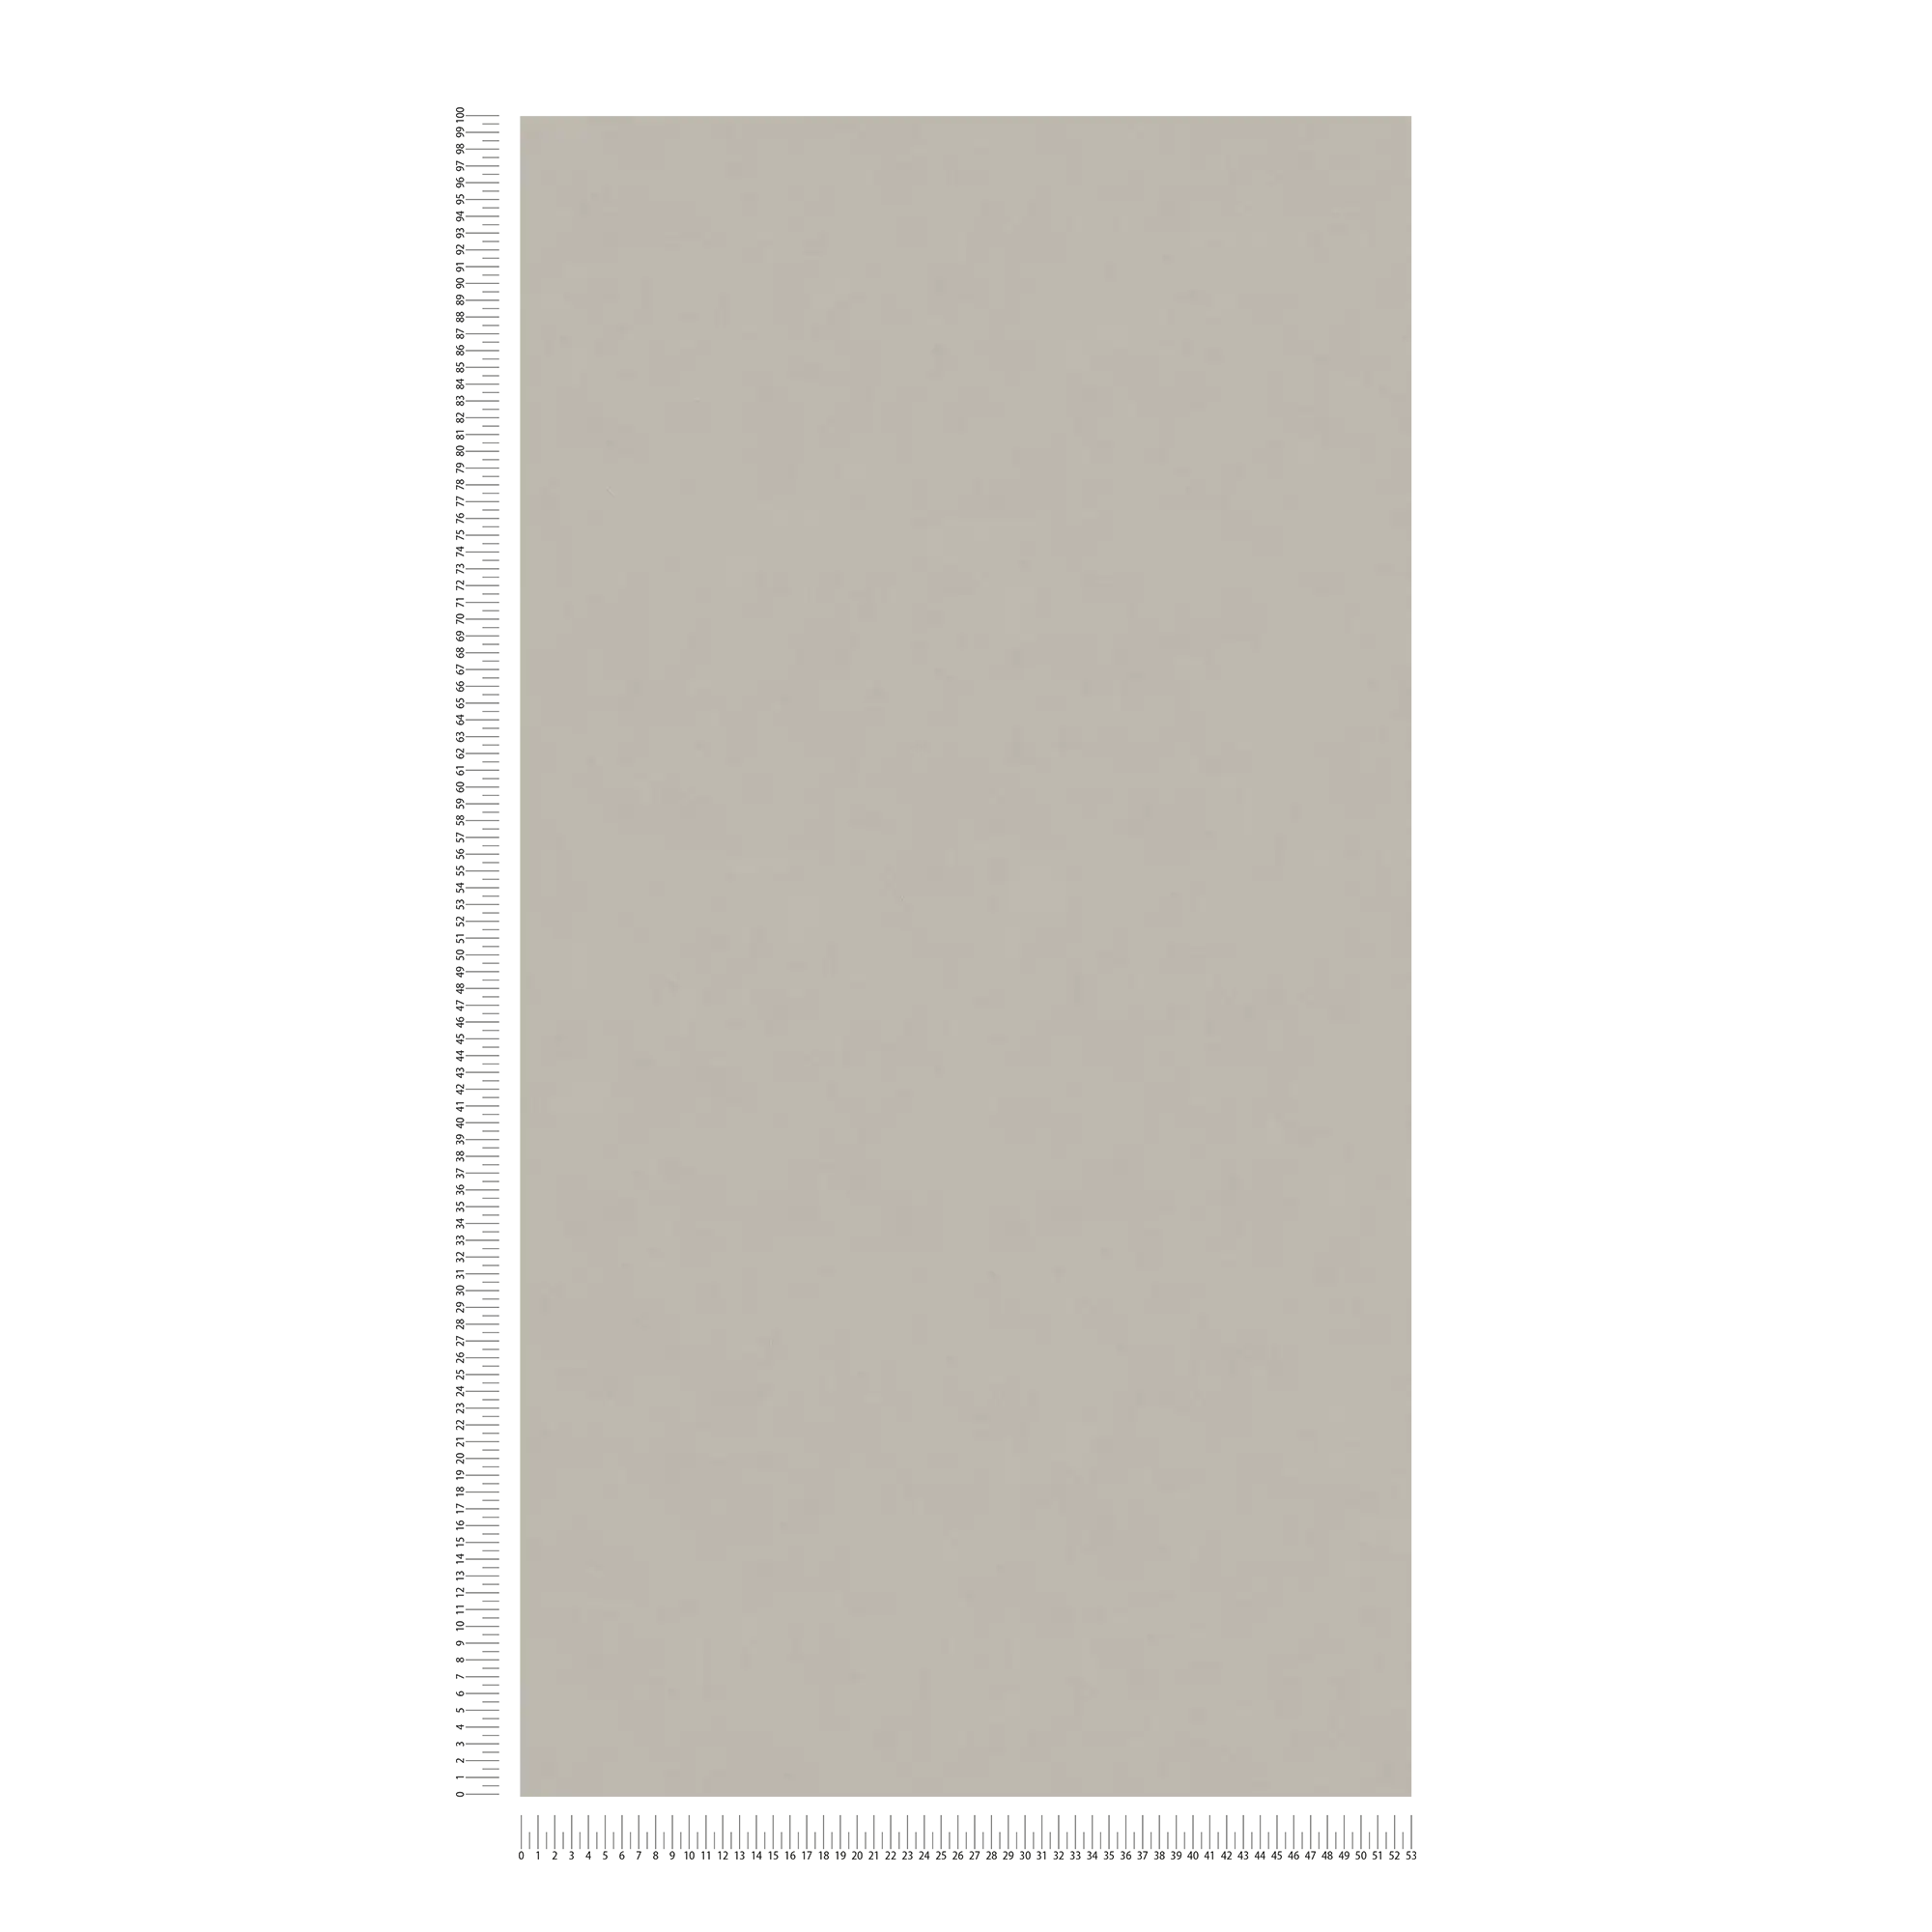             Papier peint intissé uni aspect crépi à la truelle - gris, taupe
        